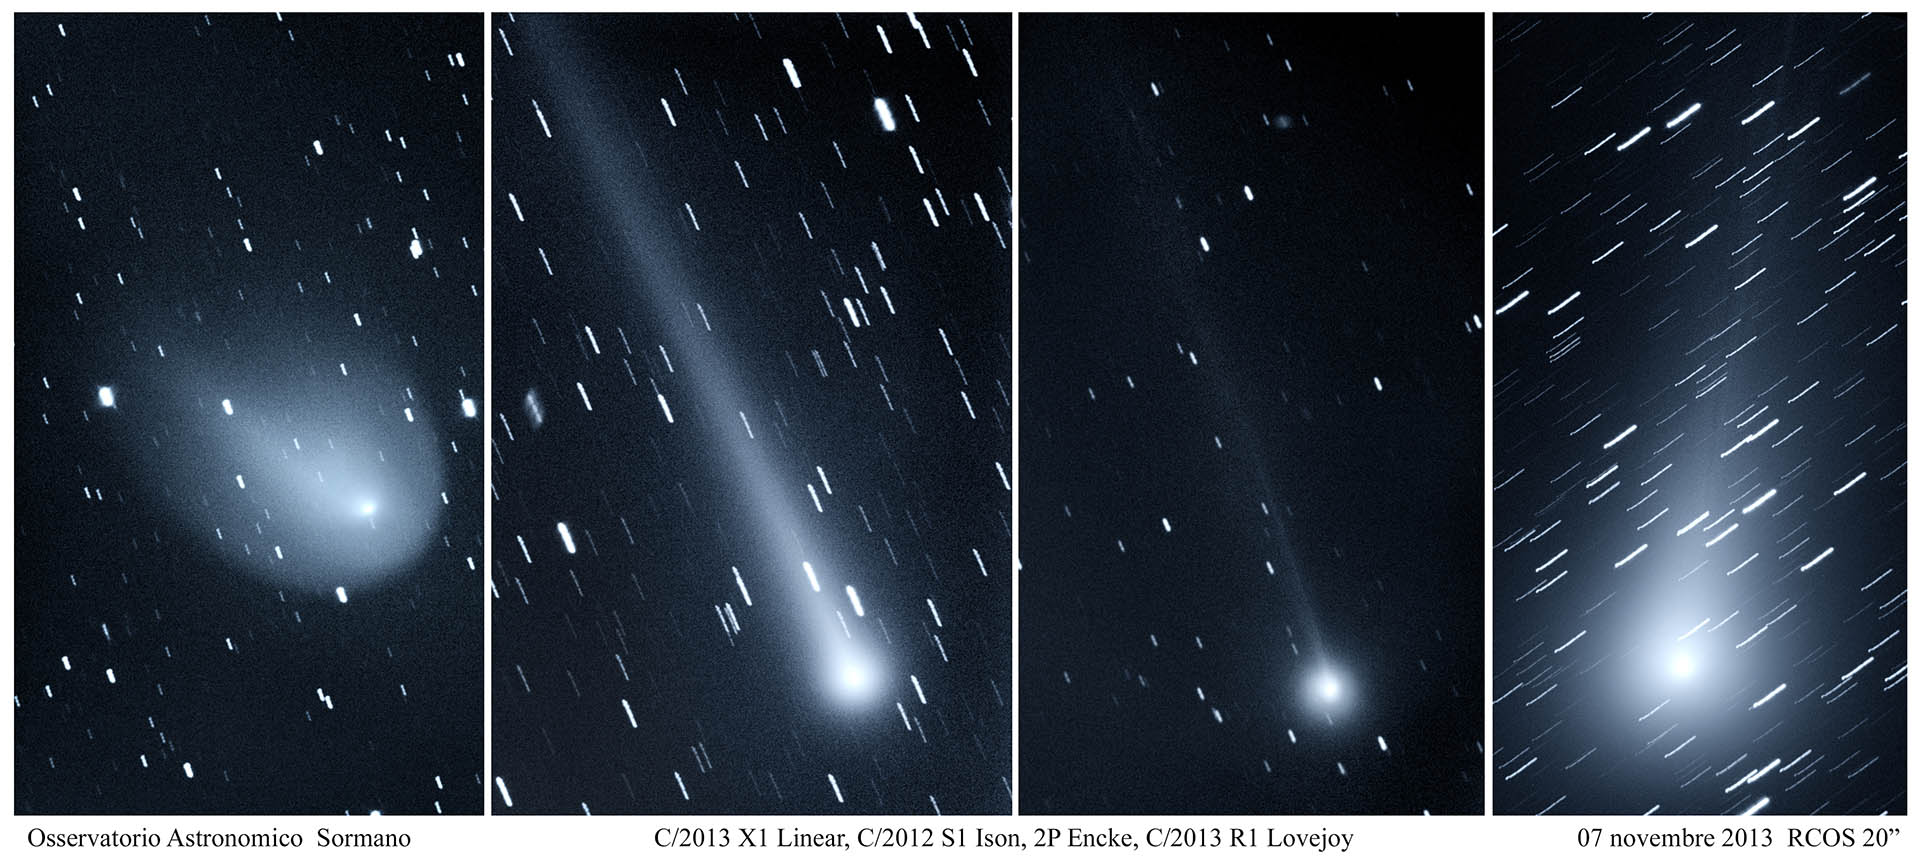 4 Comets